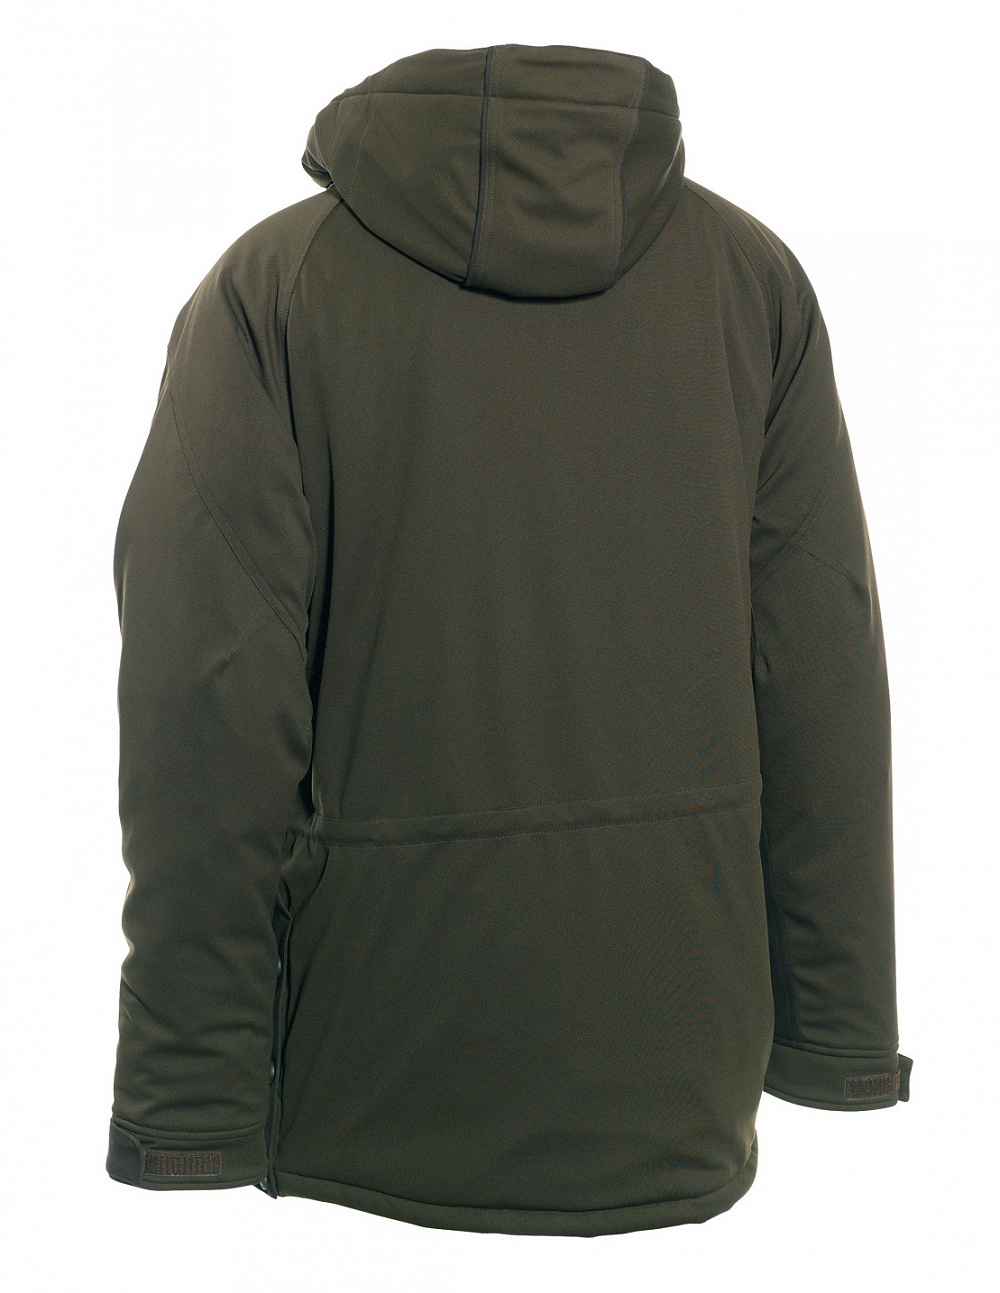 Куртка DEERHUNTER Muflon Long Art green | 5820-376 купить по оптимальной цене,  доставка по России, гарантия качества